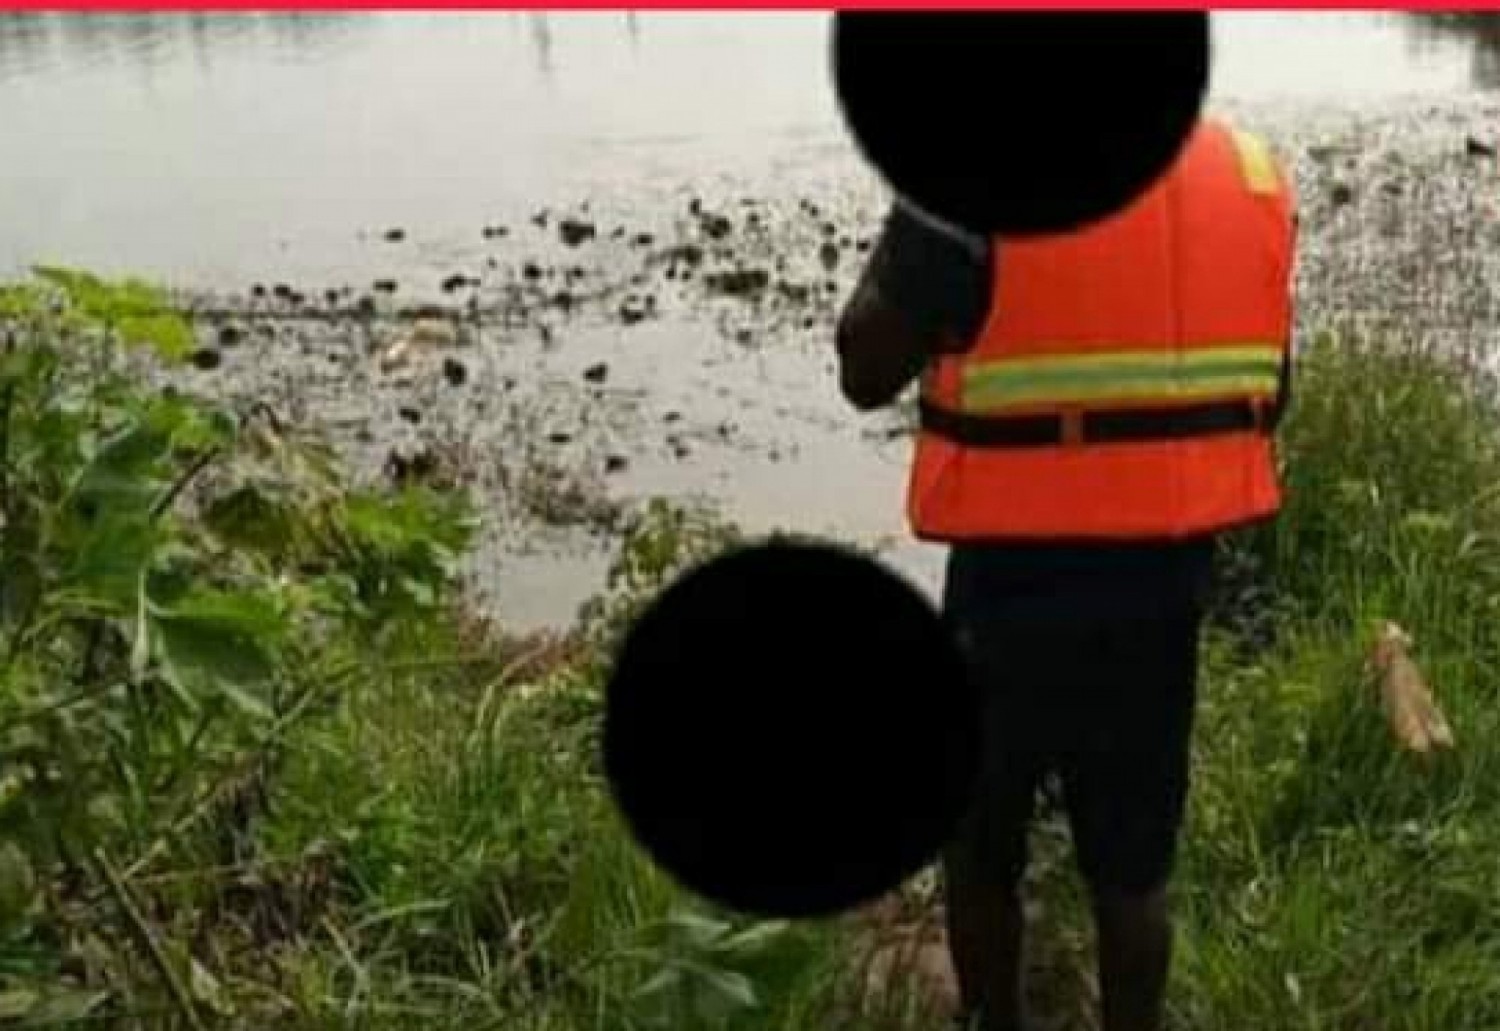 Côte d'Ivoire : Gagnoa, le corps sans vie d'un élève découvert dans un lac